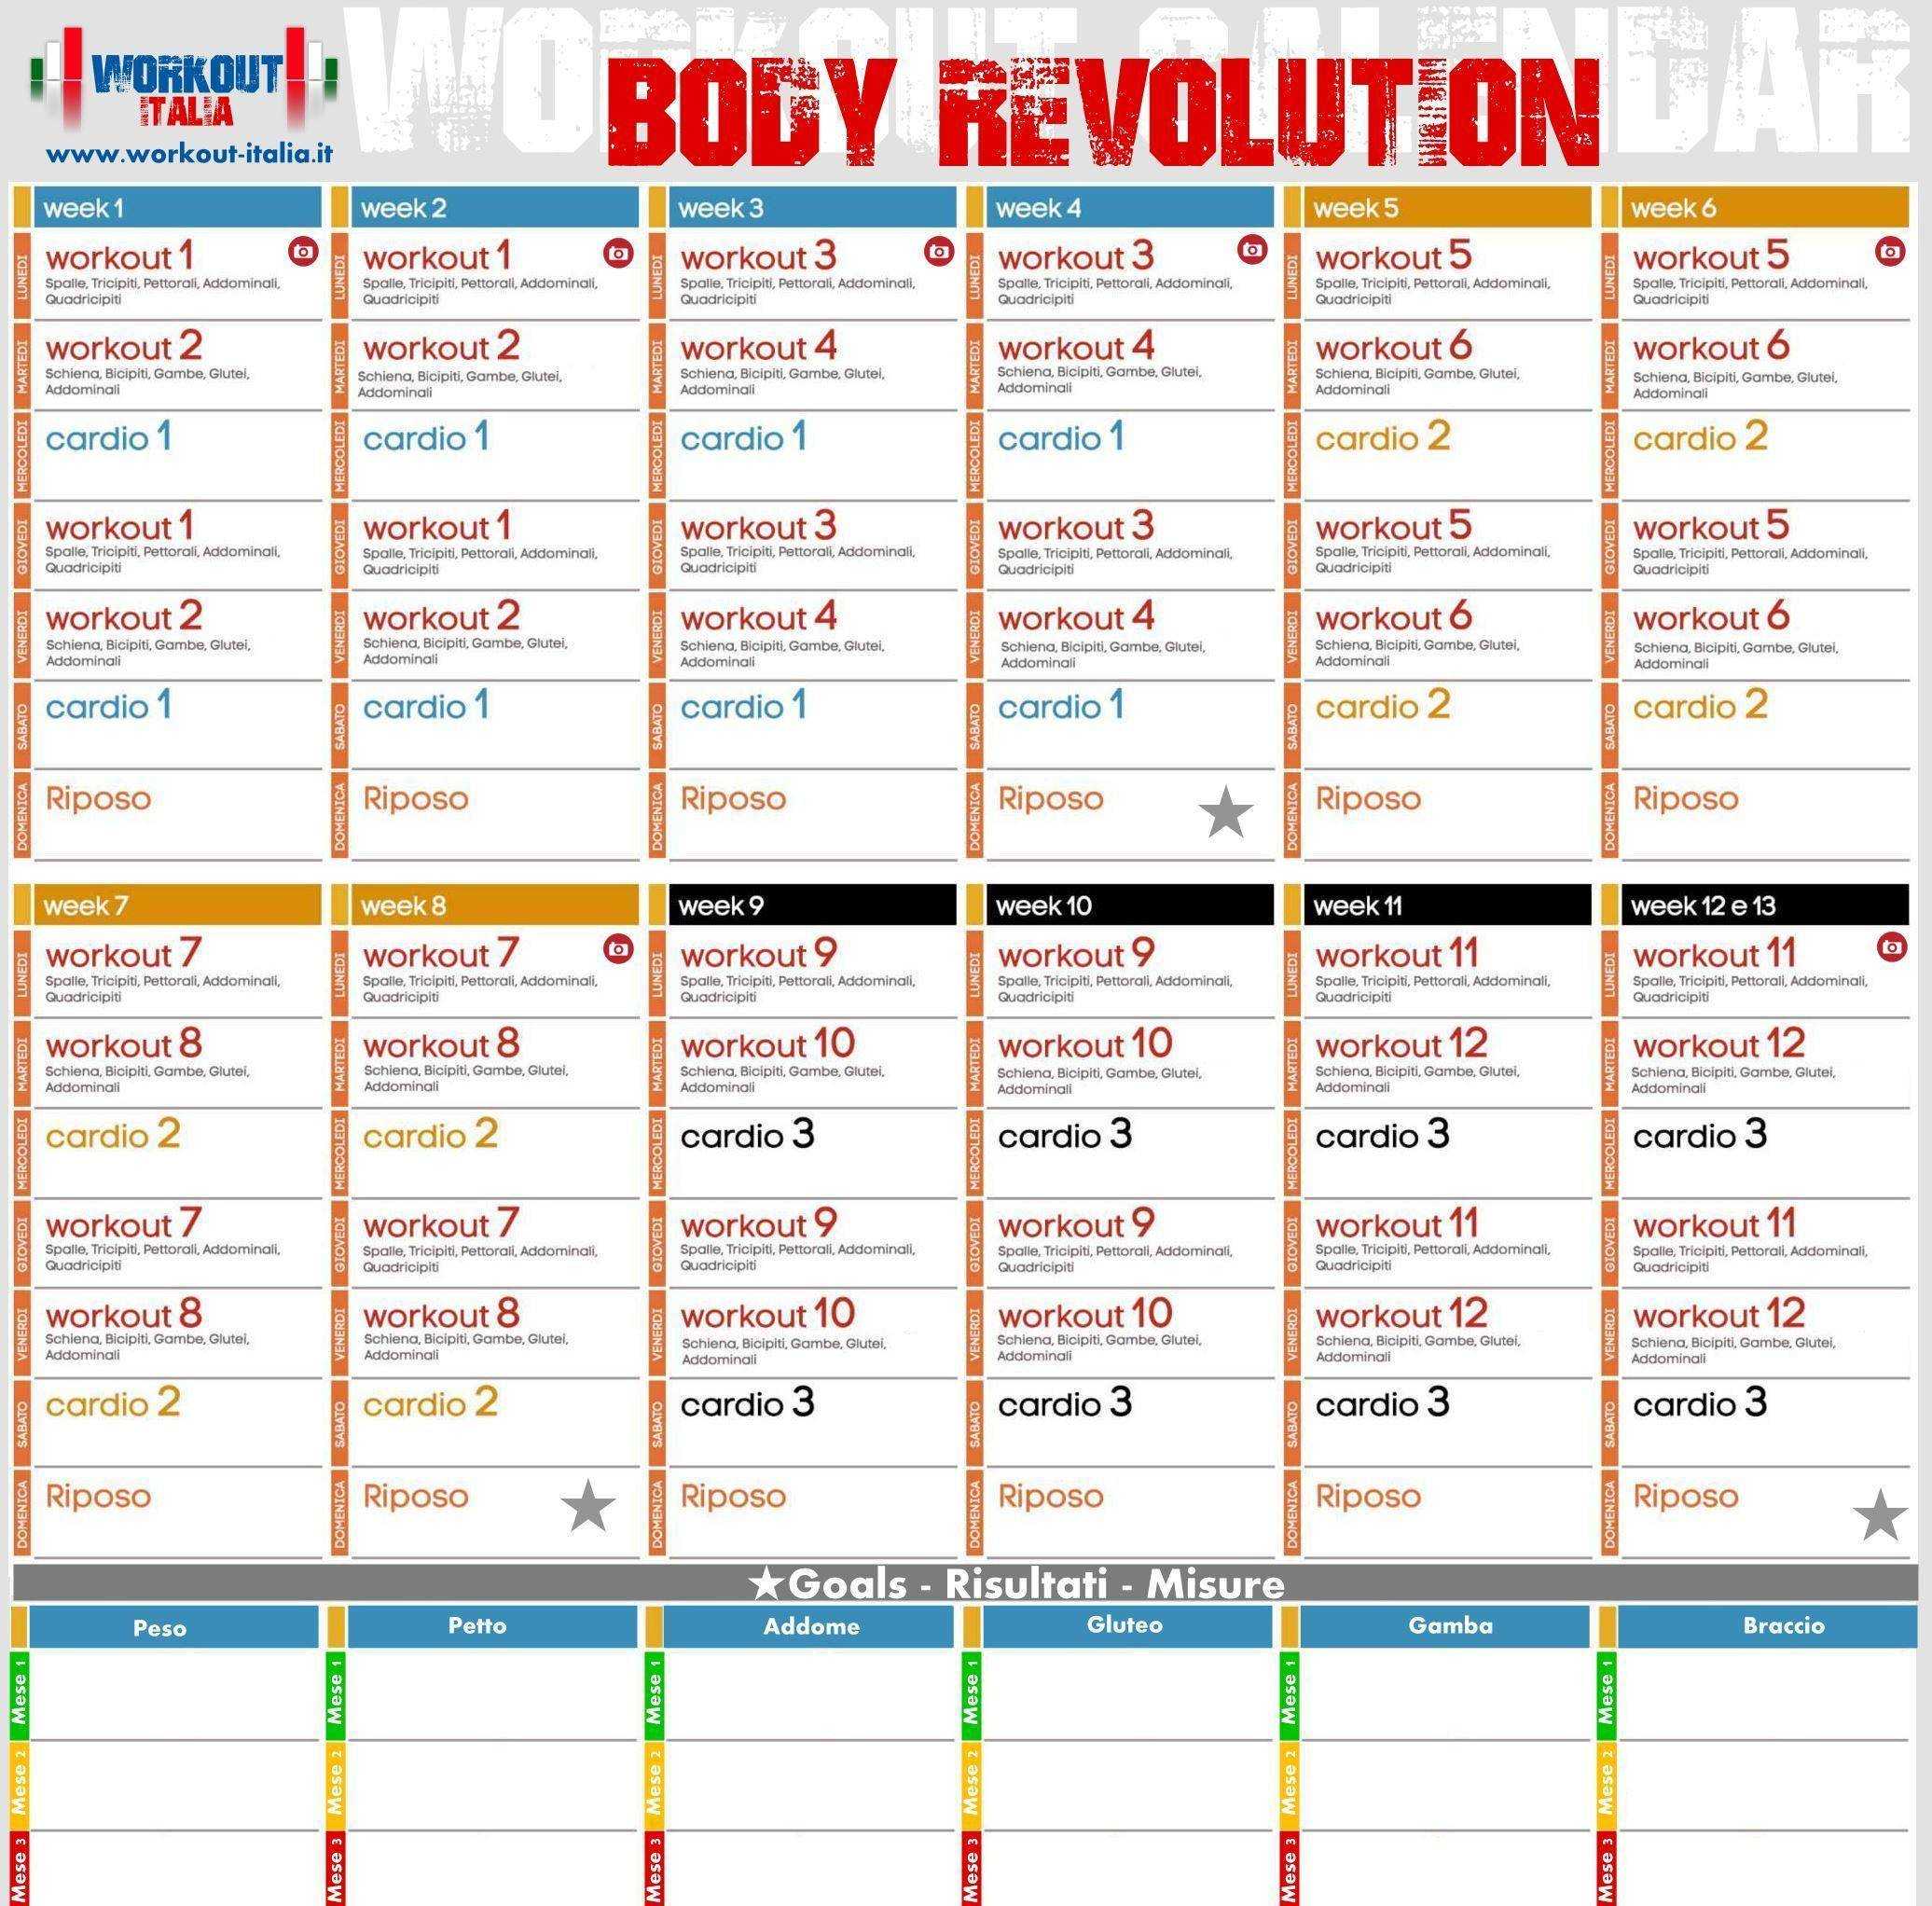 Похудеть за 30 дней видео. Body Revolution Джиллиан Майклс календарь тренировок. Боди революшн с Джиллиан Майклс. Джилиан Майклс революция тела график тренировок. Джилиан Майклс революция тела календарь.